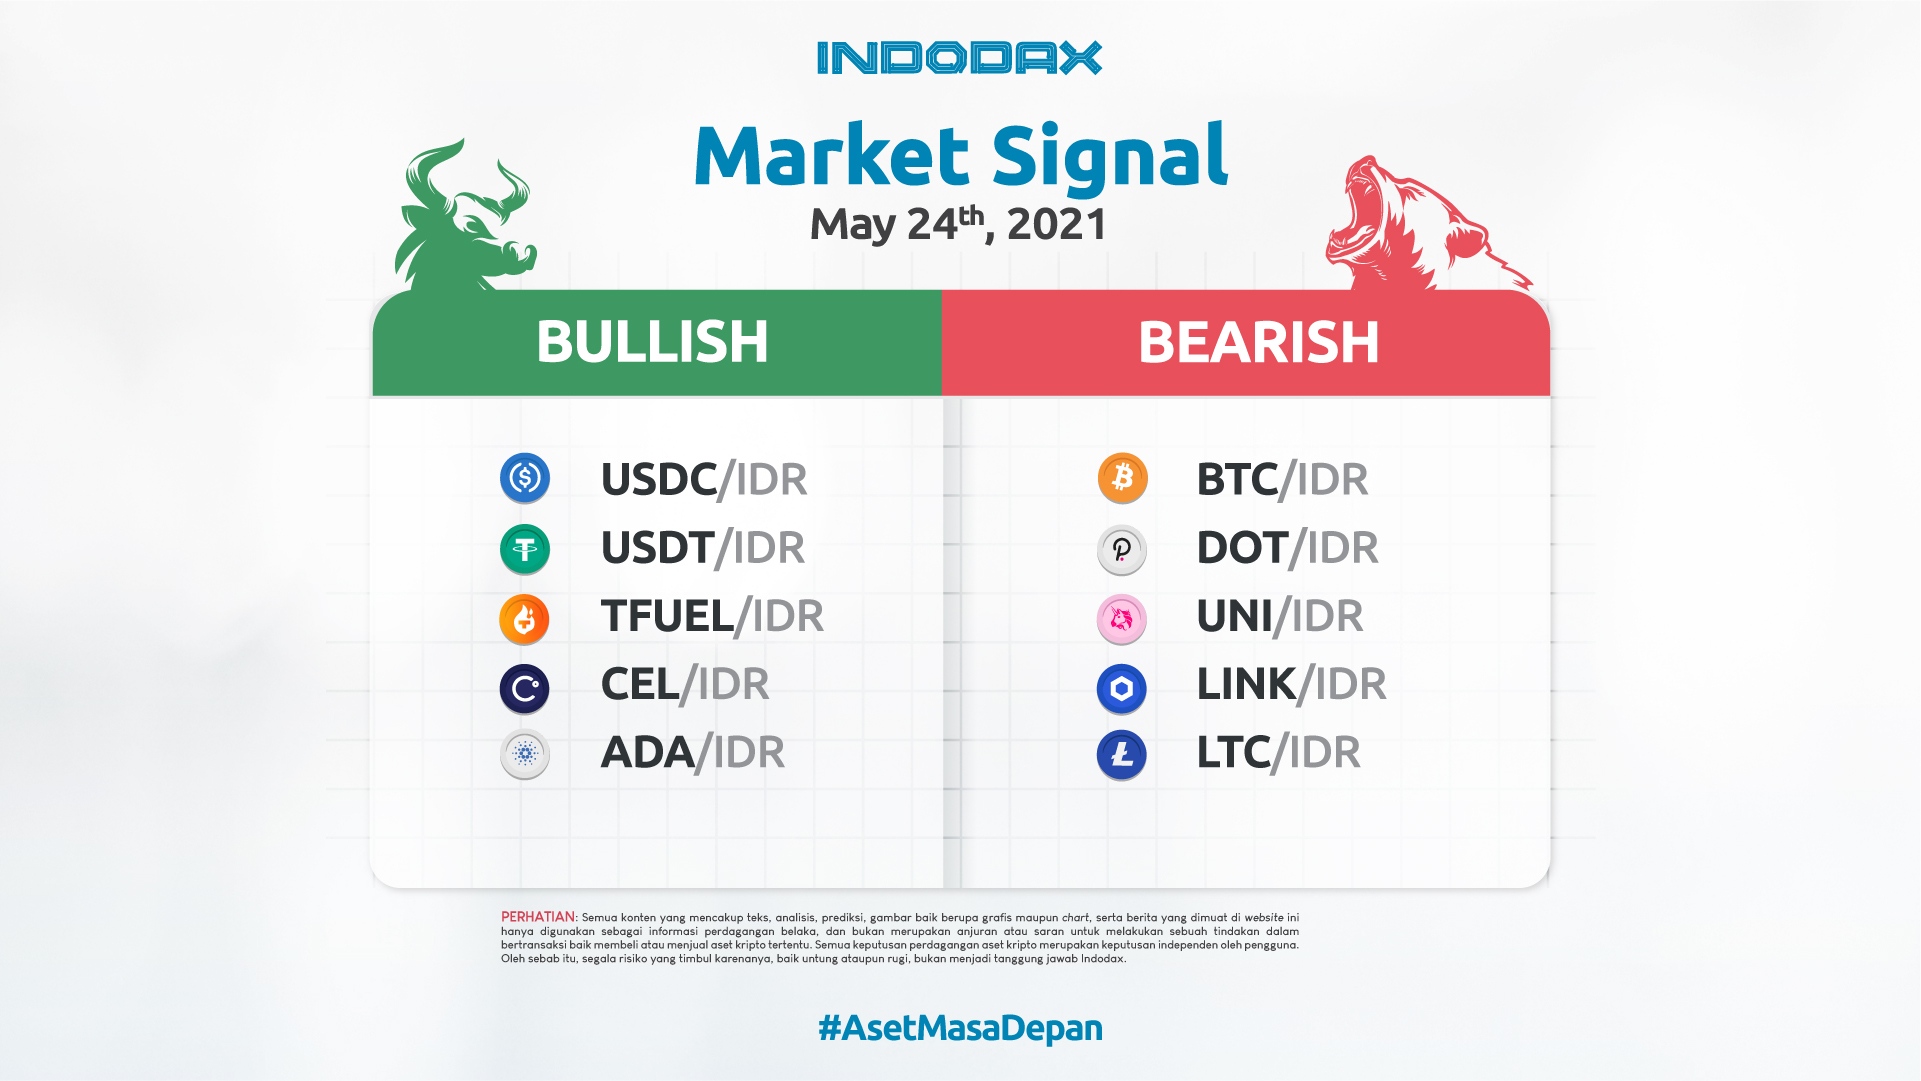 Indodax Market Signal May 24th, 2021: 5 Bullish and Bearish Crypto Assets This Week